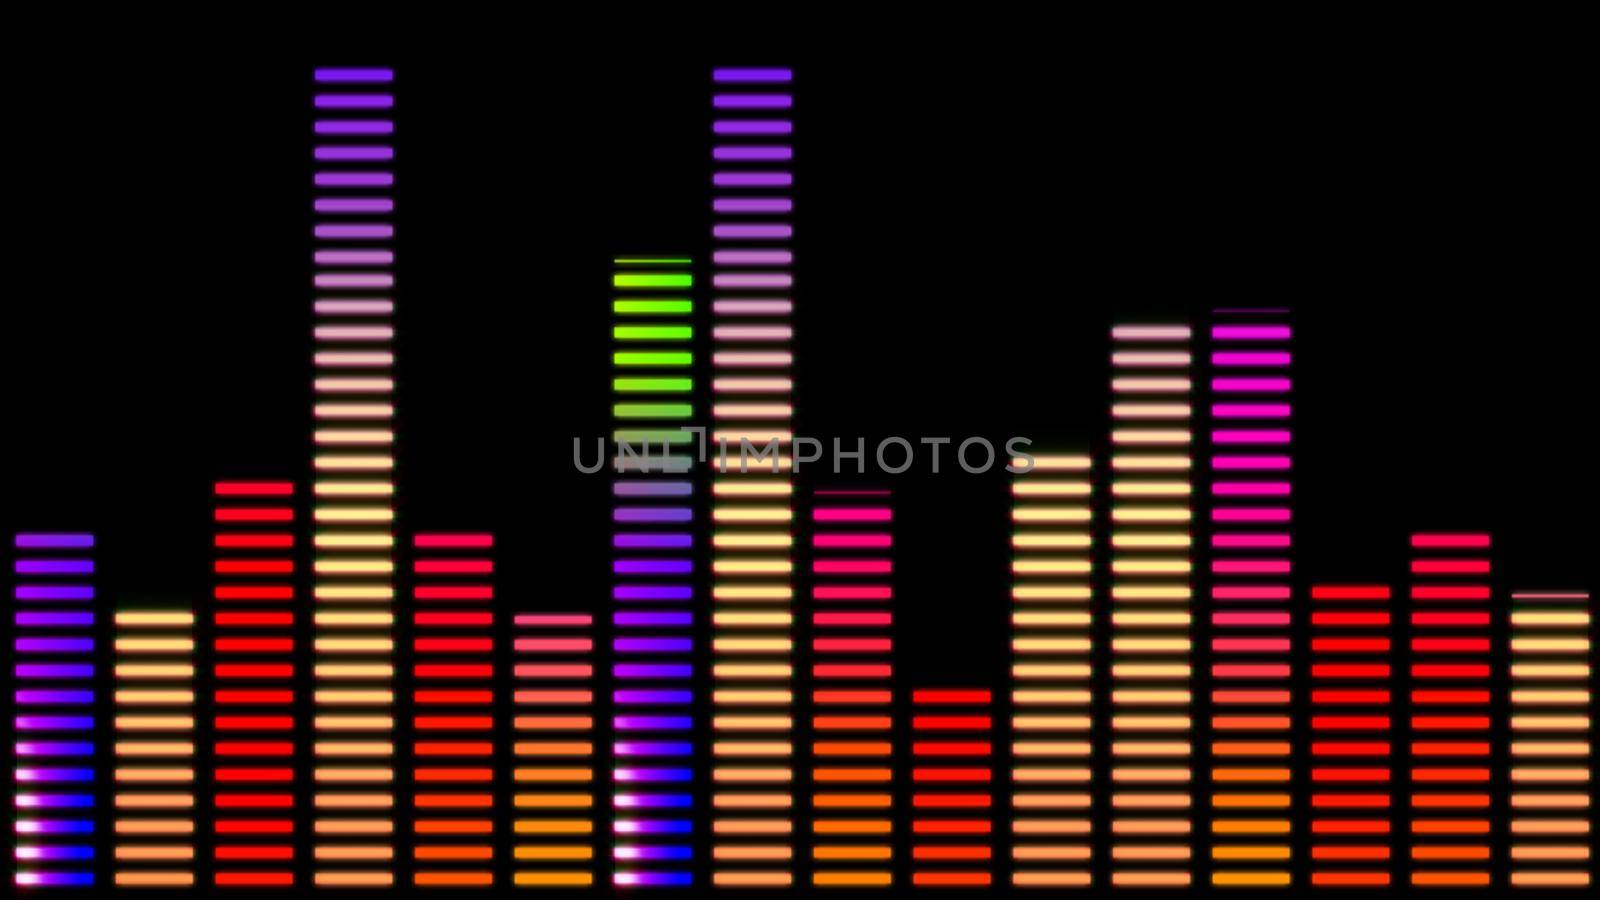 Digital equalizer bar graph, Sound Equalizer Abstract Background illustration